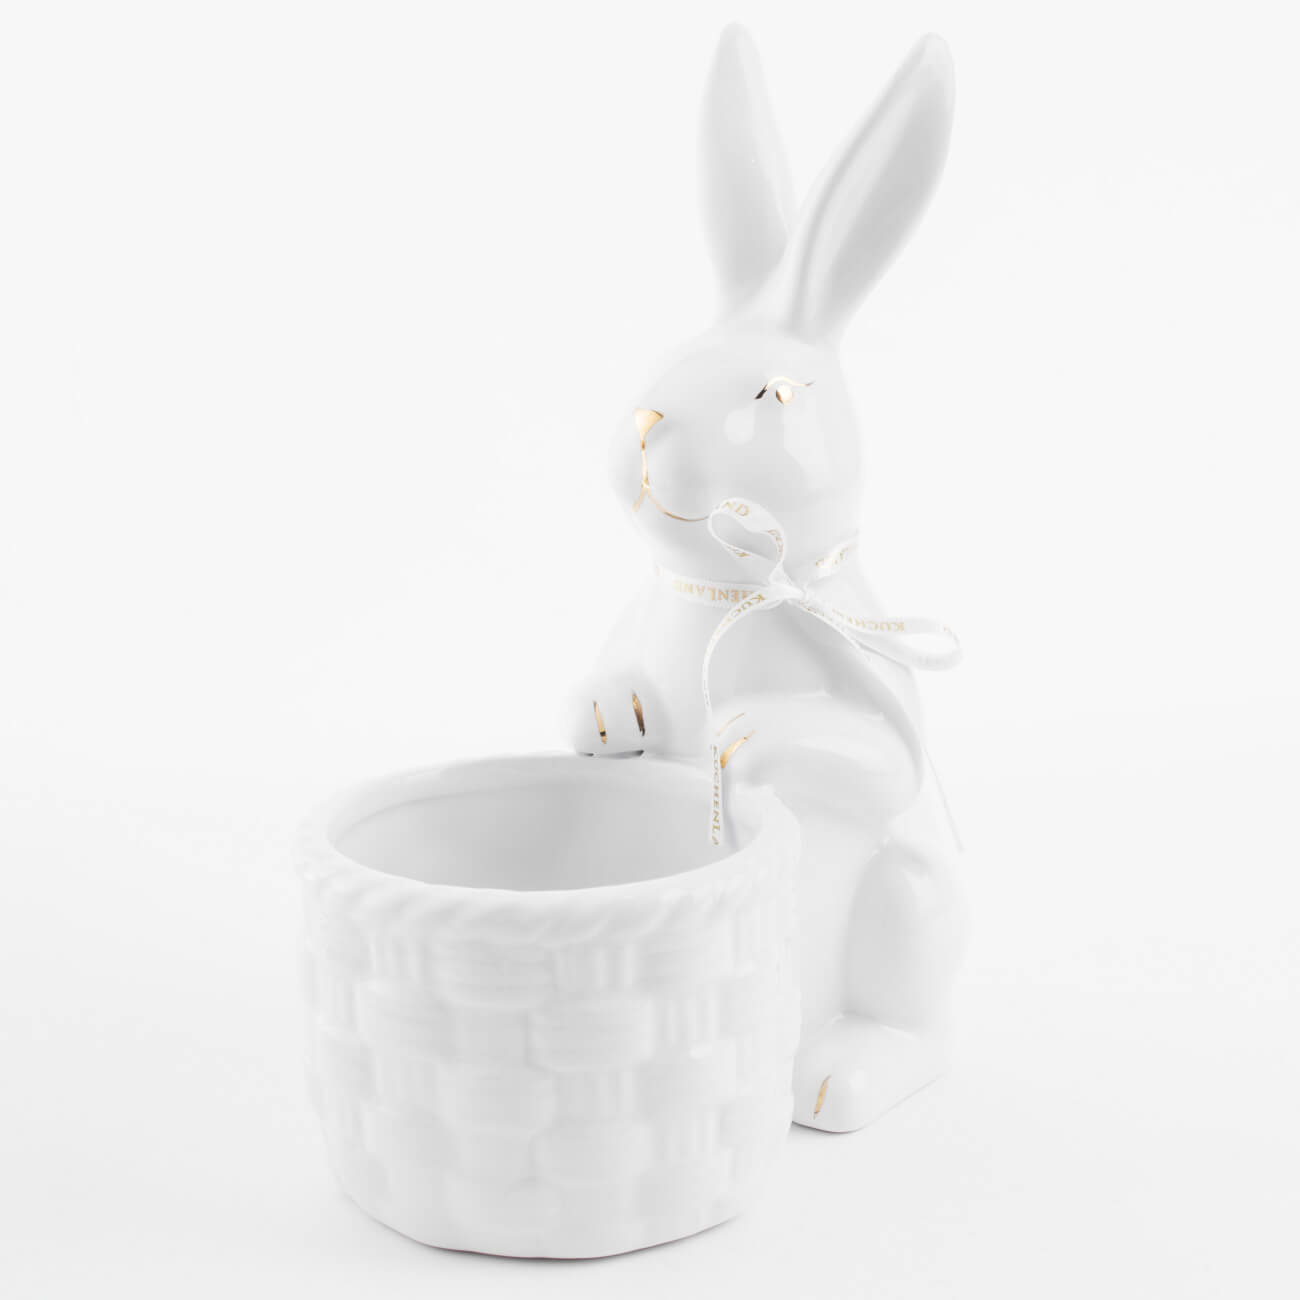 Конфетница, 18x23 см, керамика, белая, Кролик с плетенной корзиной, Easter gold